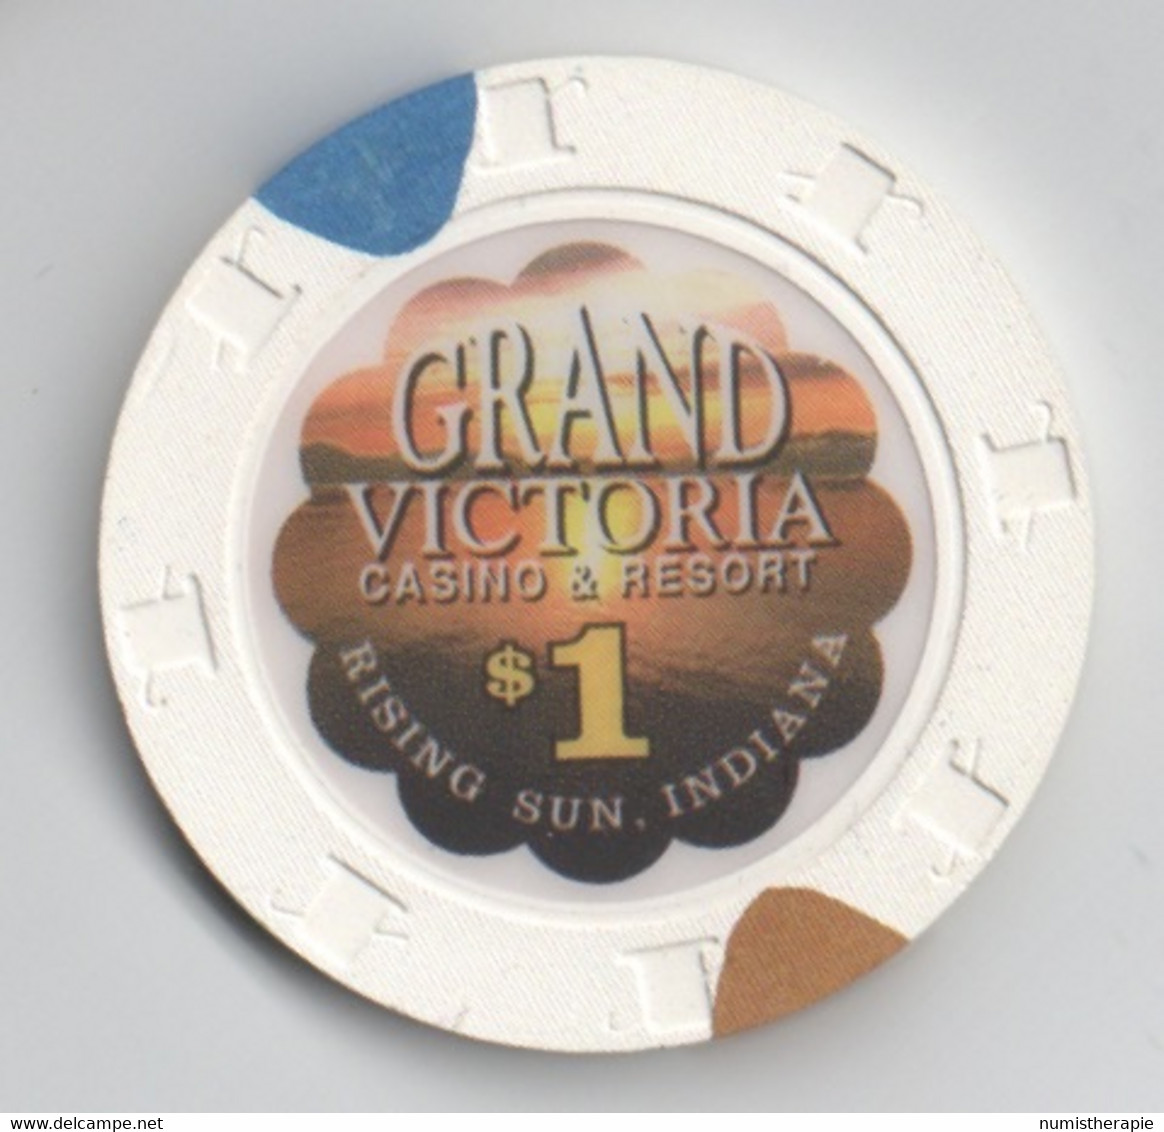 Grand Victoria Casino & Resort : Rising Sun IN : $1 - Casino